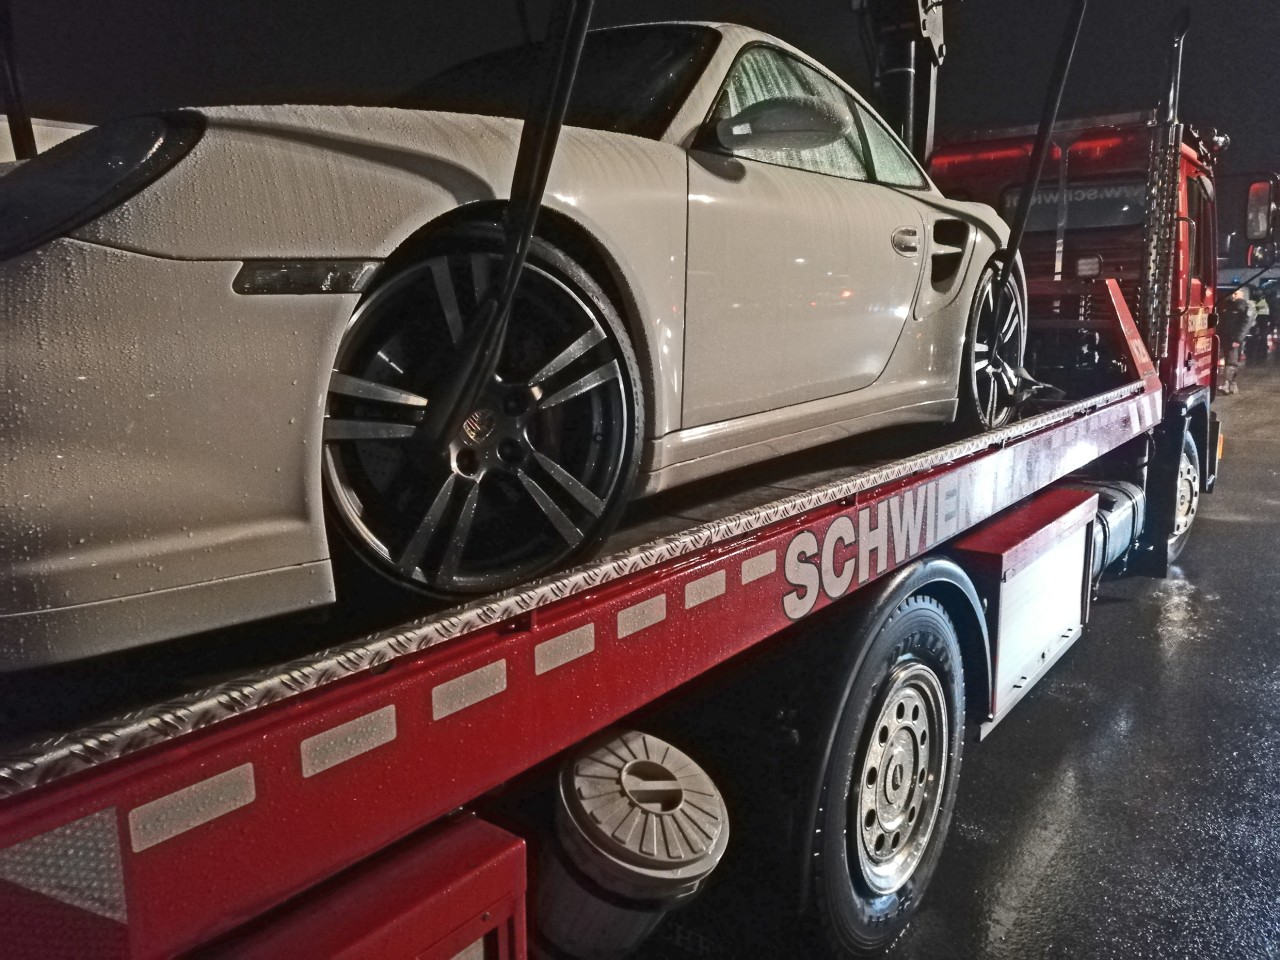 Dieser Porsche wurde bei der Kontrolle von der Polizei sichergestellt. 